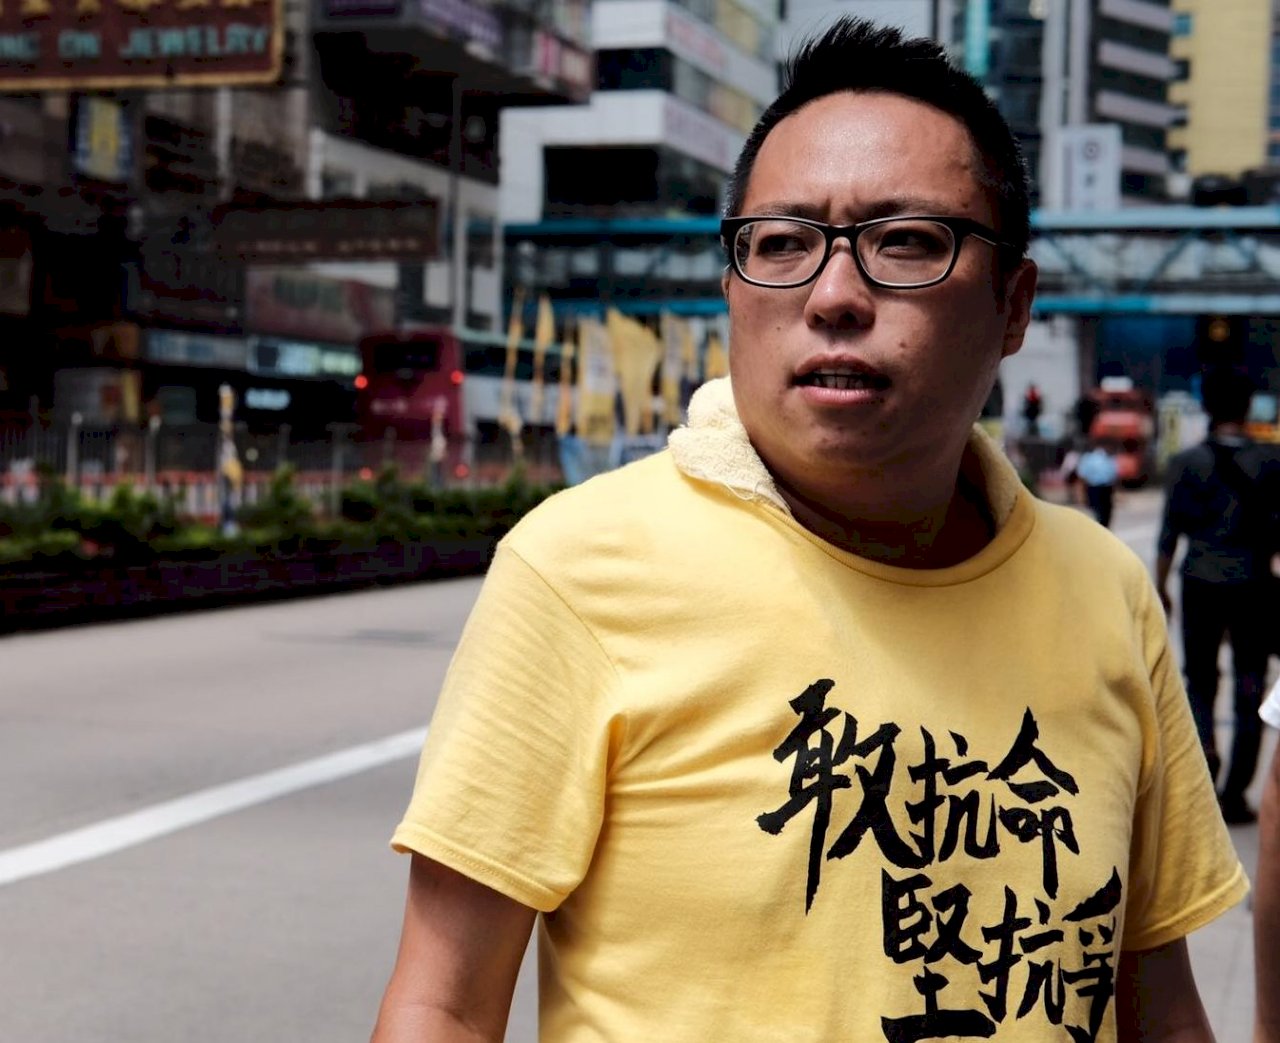 光復香港口號構成煽動罪 法院：暴力意圖非要素